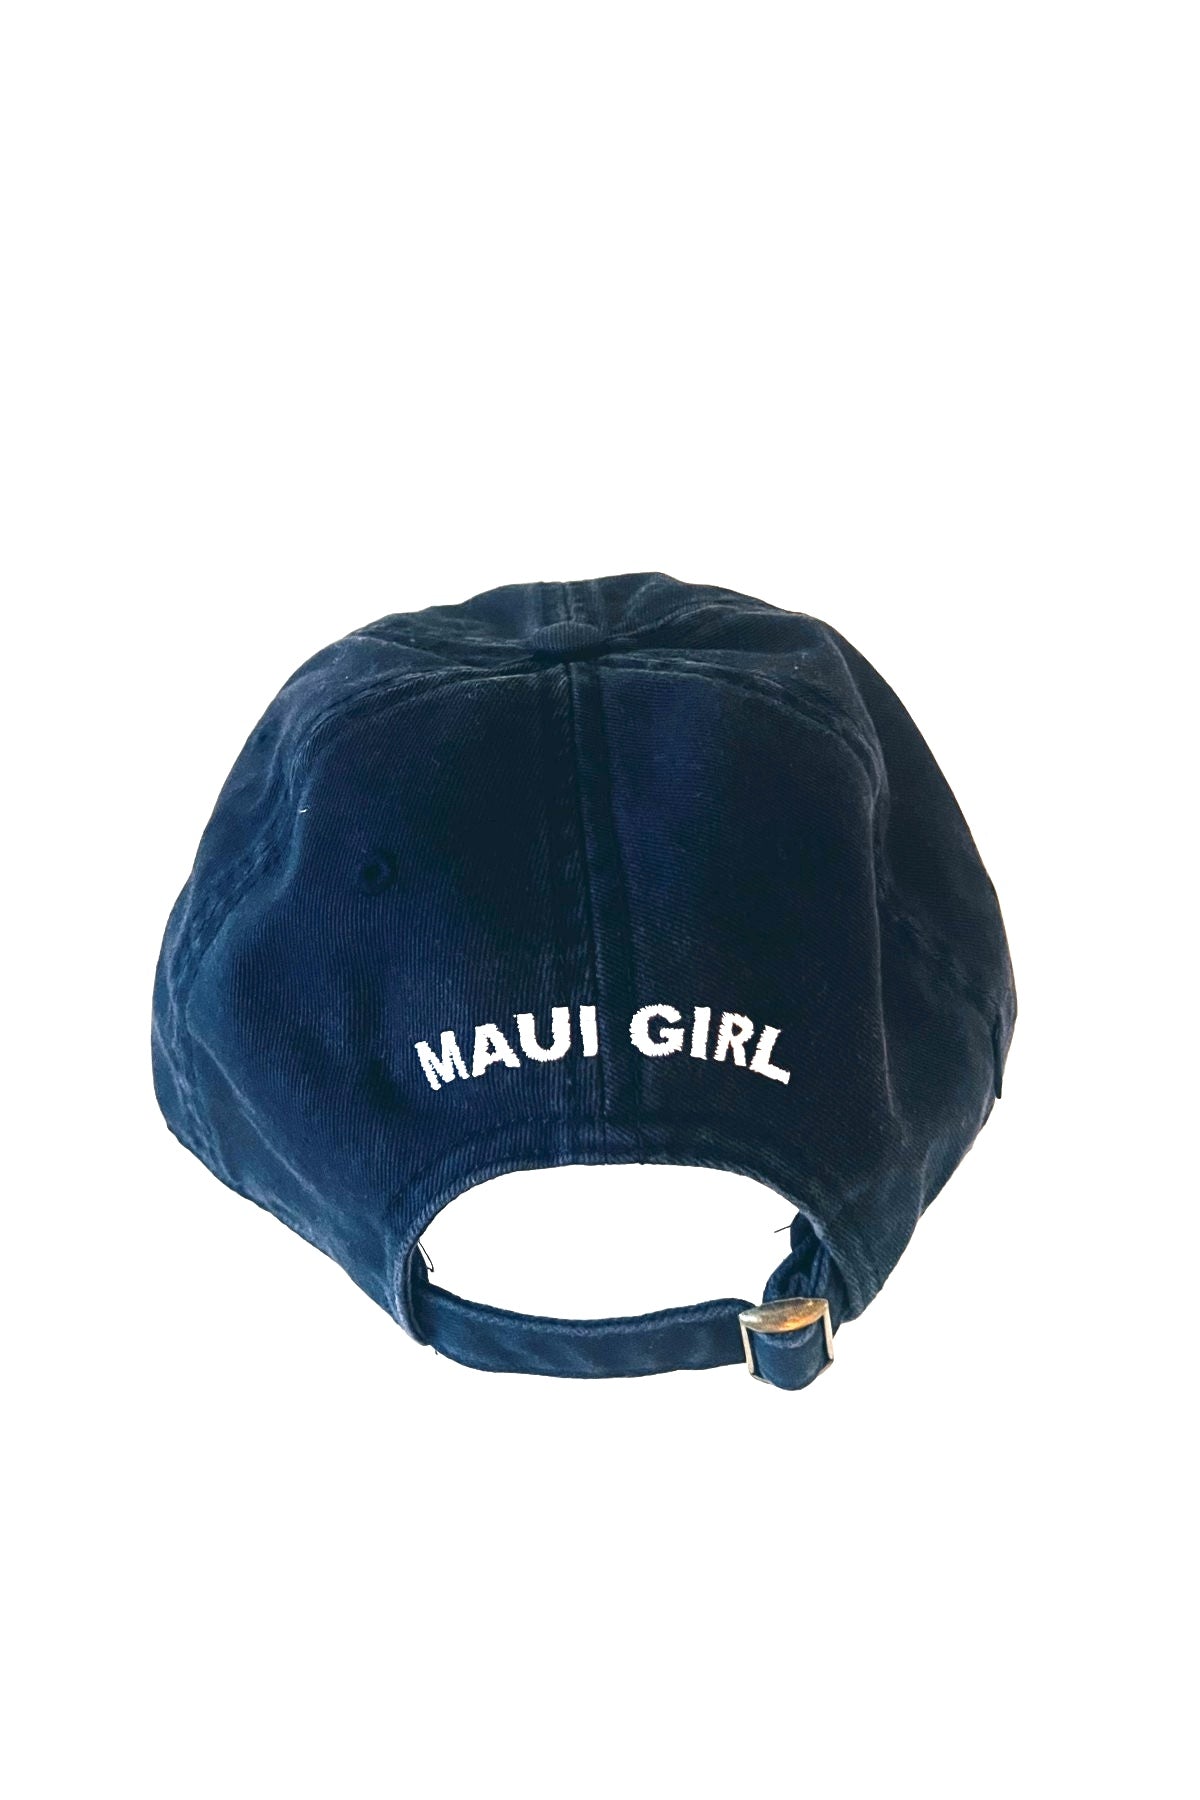 Maui Girl Rainbow Hat